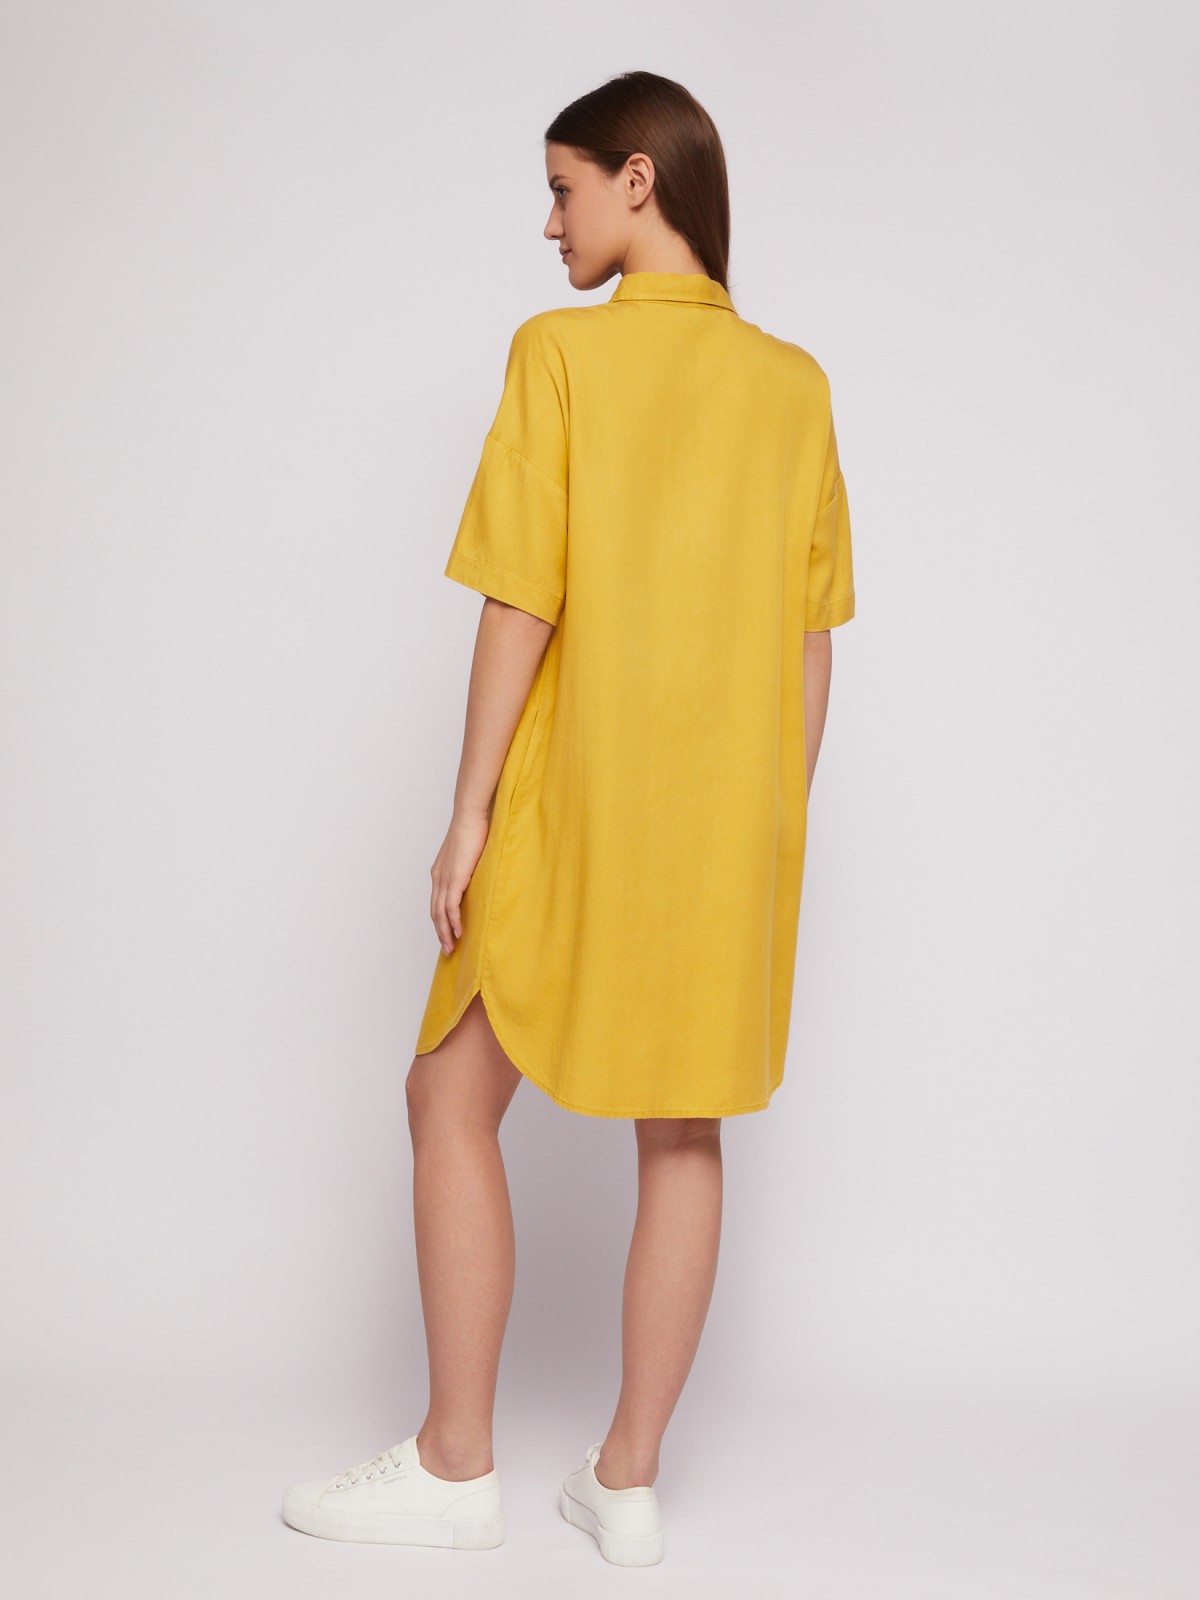 Платье-рубашка мини из лиоцелла на пуговицах zolla 02421827Y053, цвет горчичный, размер S - фото 5